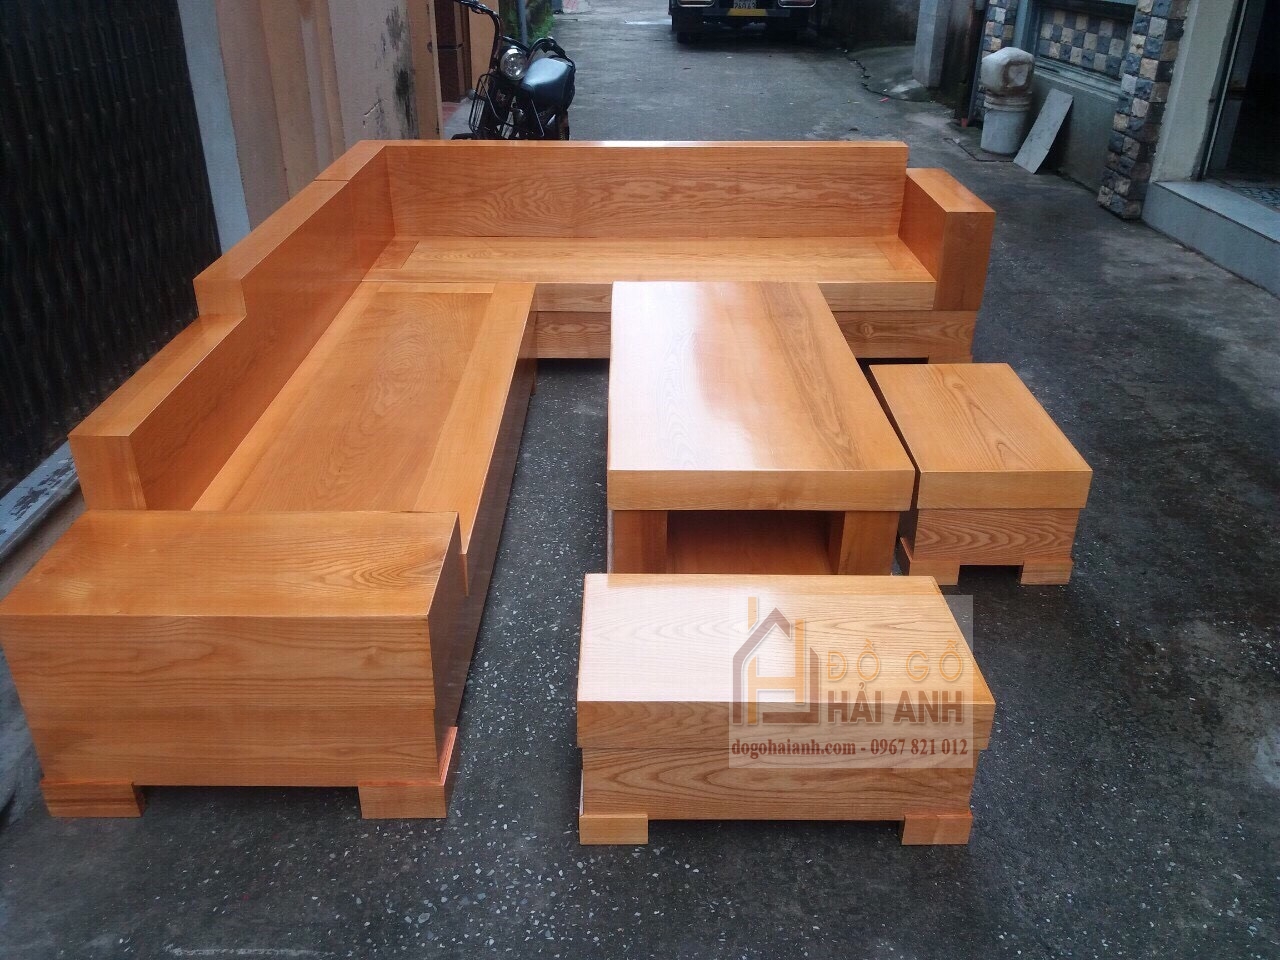 Bàn ghế sofa gỗ sồi Nga giá rẻ tại Hà Nội | Hải Anh